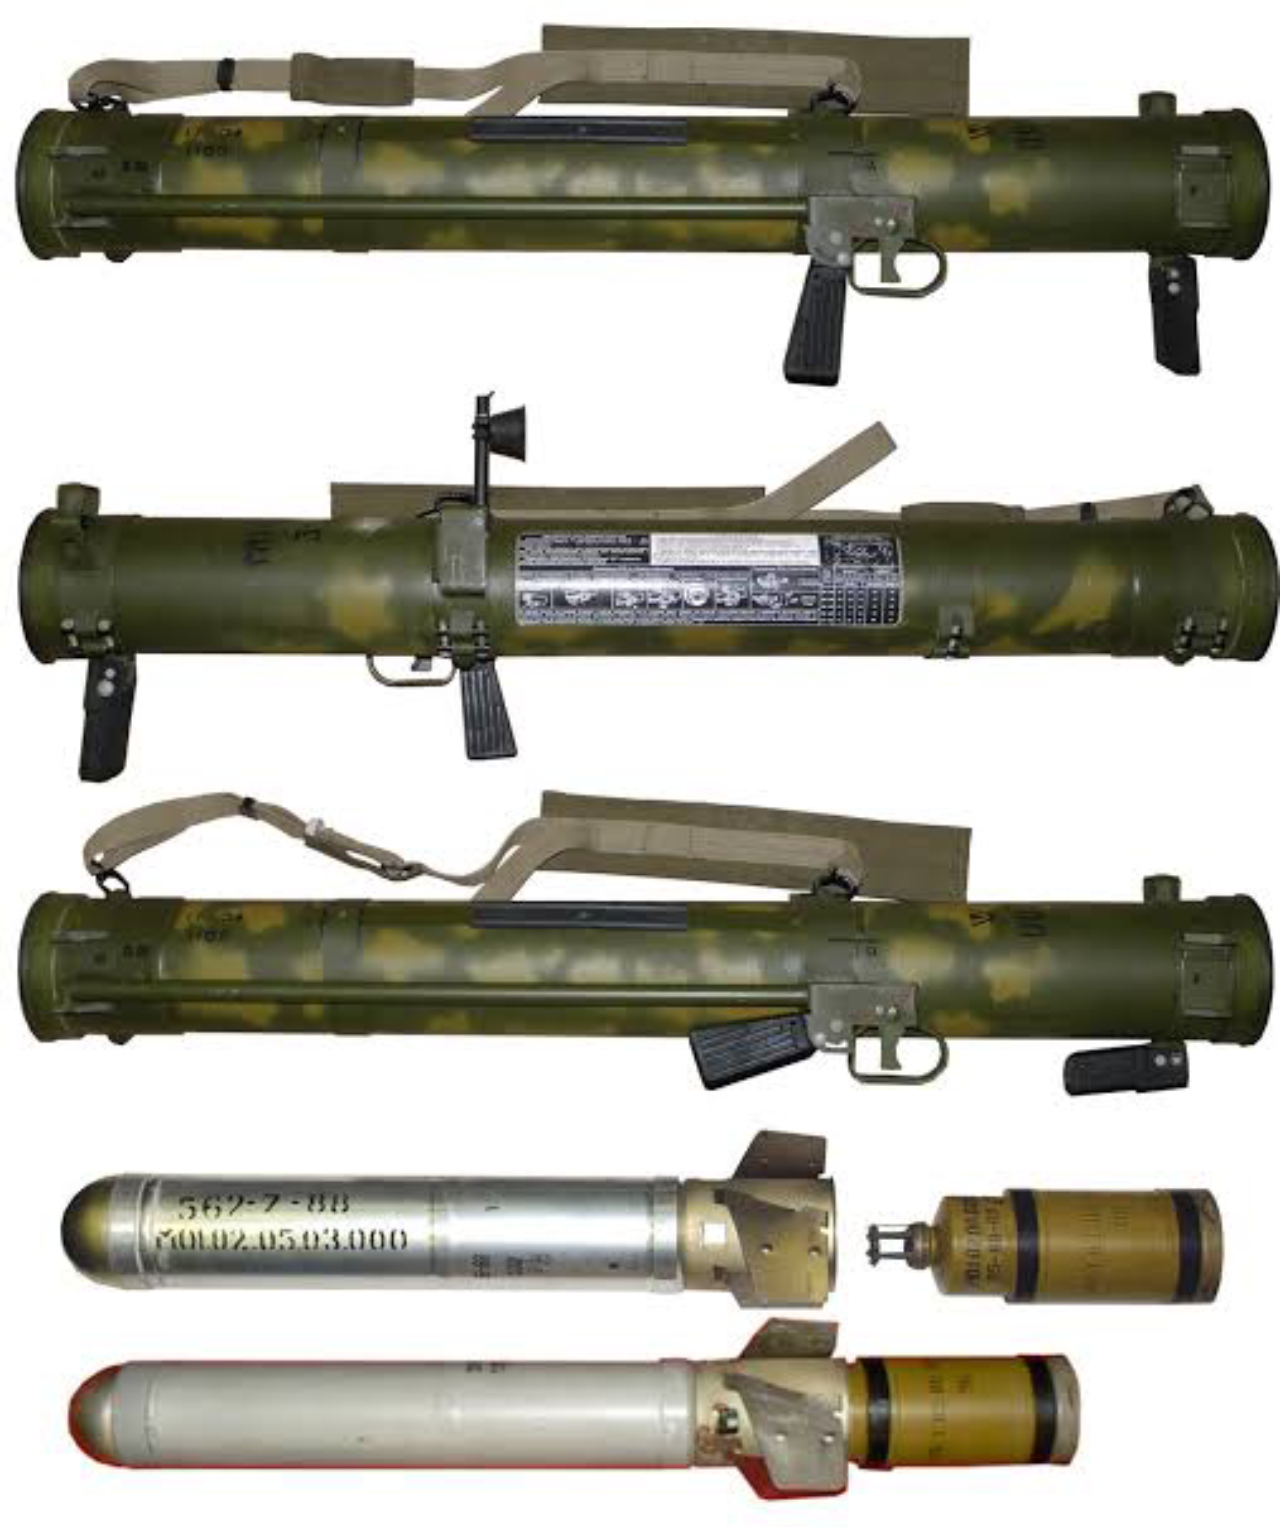 Использованный гранатомет. Реактивный пехотный огнемет «Шмель». Реактивный огнемет РПО «Шмель». Реактивный пехотный огнемет РПО-А «Шмель». РПО ПДМ-А Шмель-м.